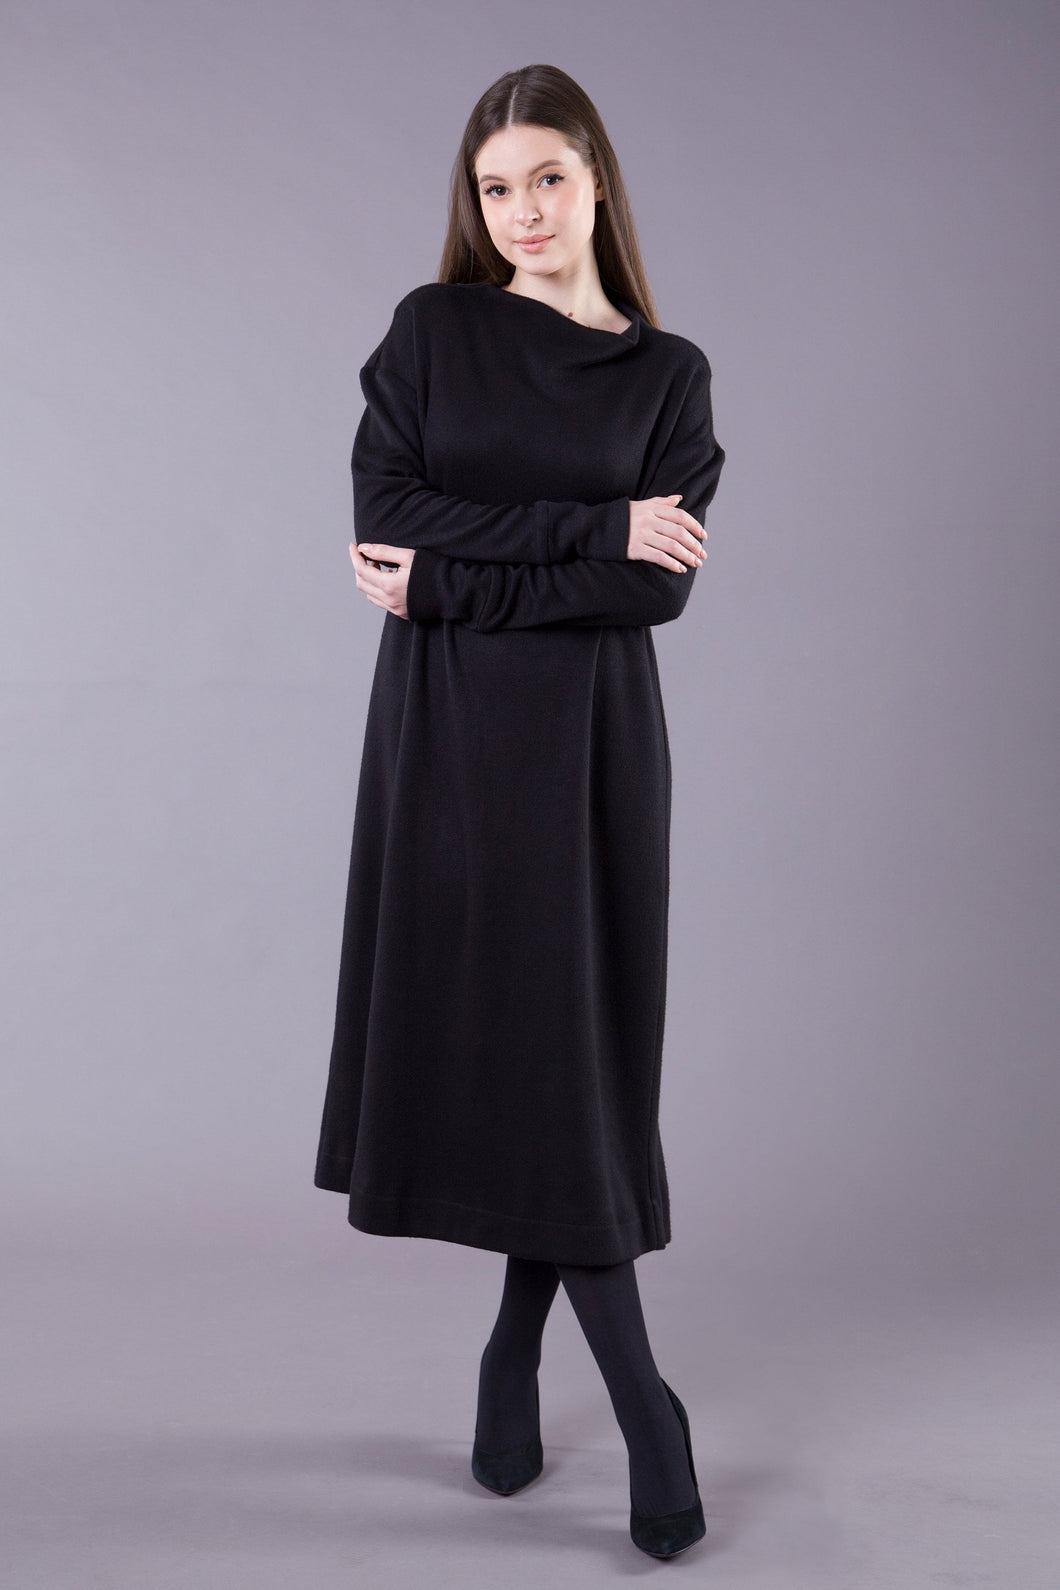 Black maxi sweater dress